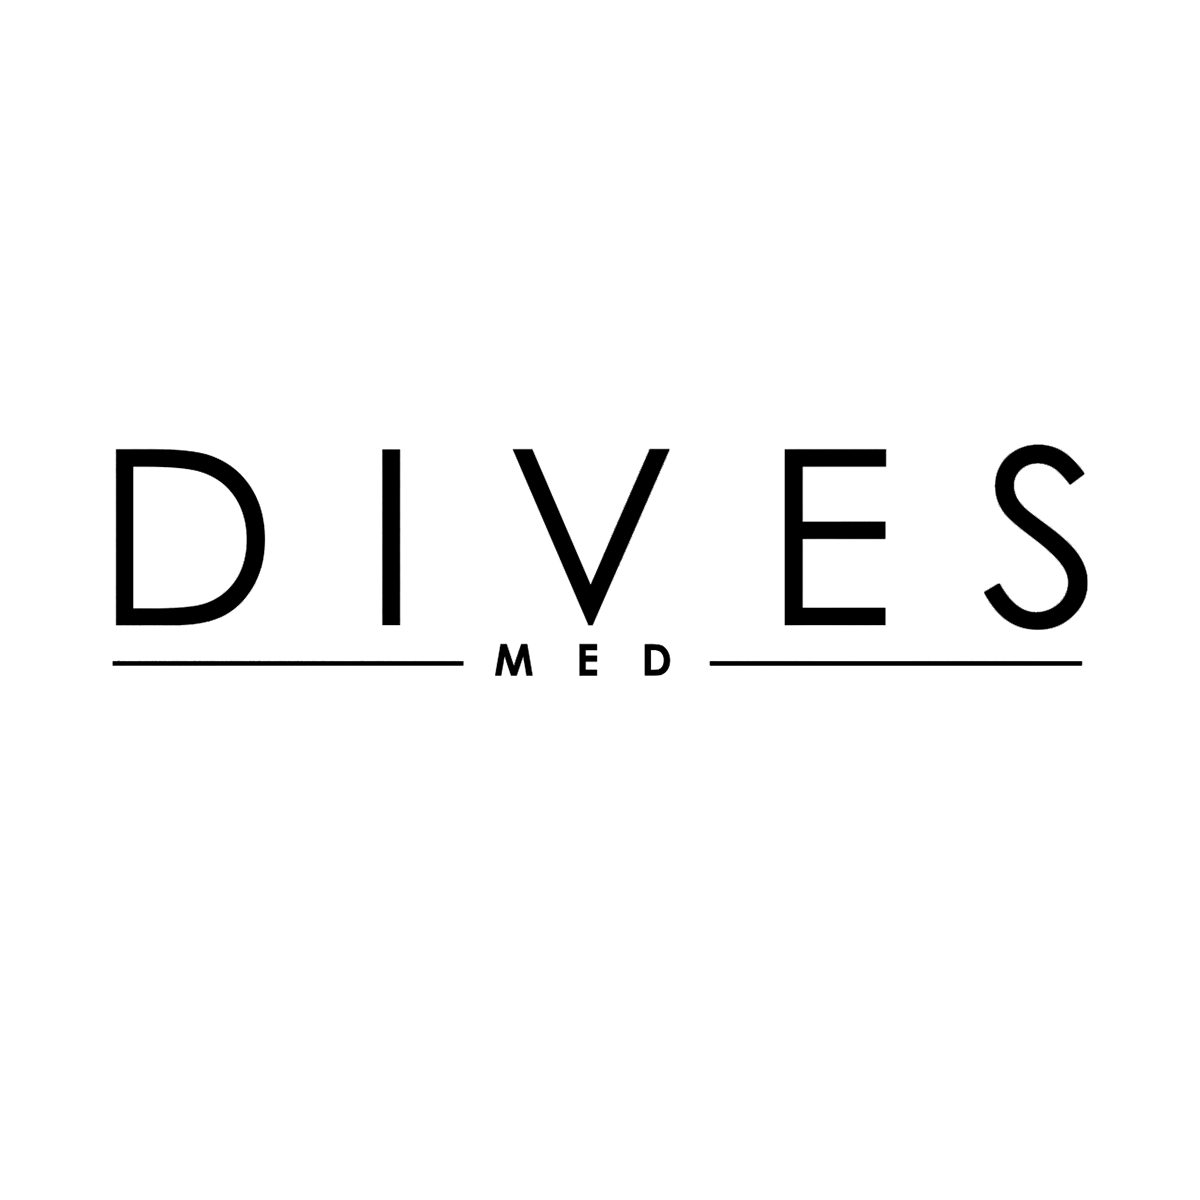 Dives Med